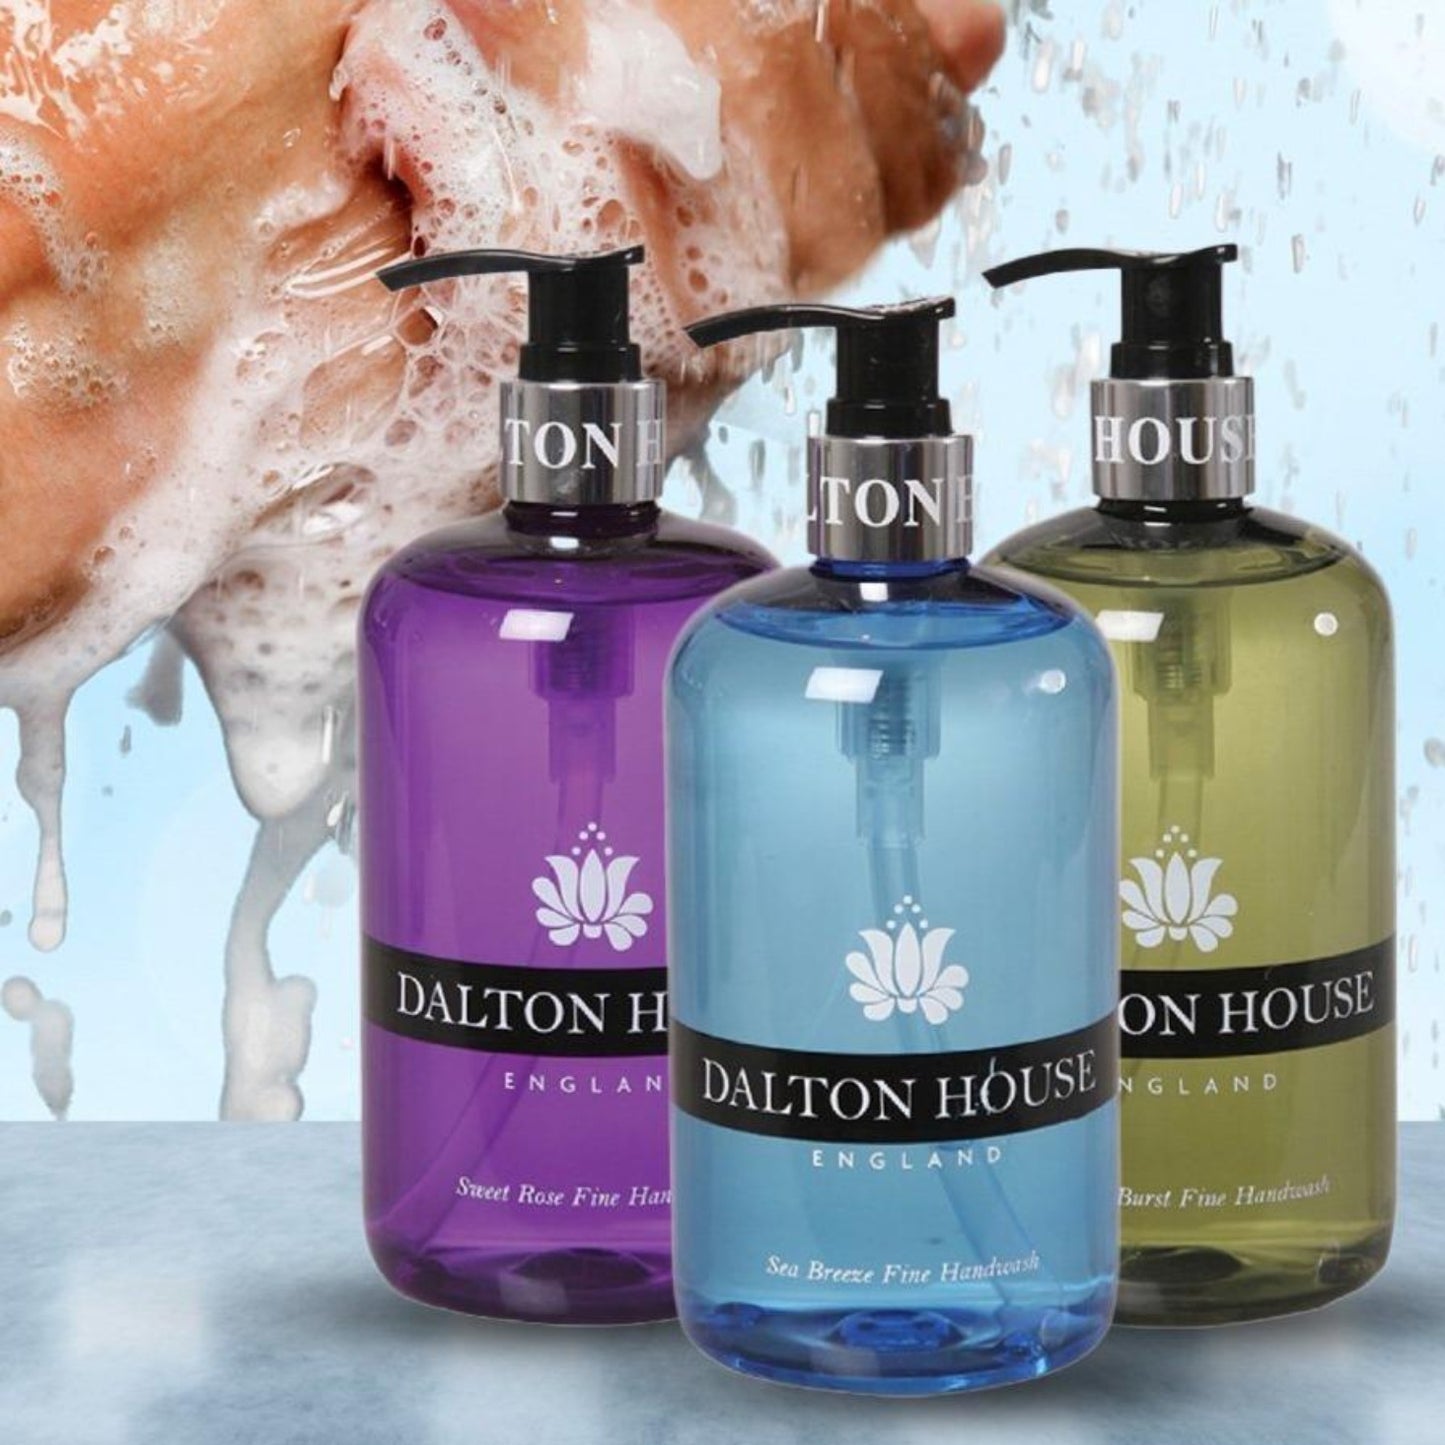 3 ks Dalton House London Prémiové Mýdlo na Ruce 3 x 500 ml - 3 za cenu 1